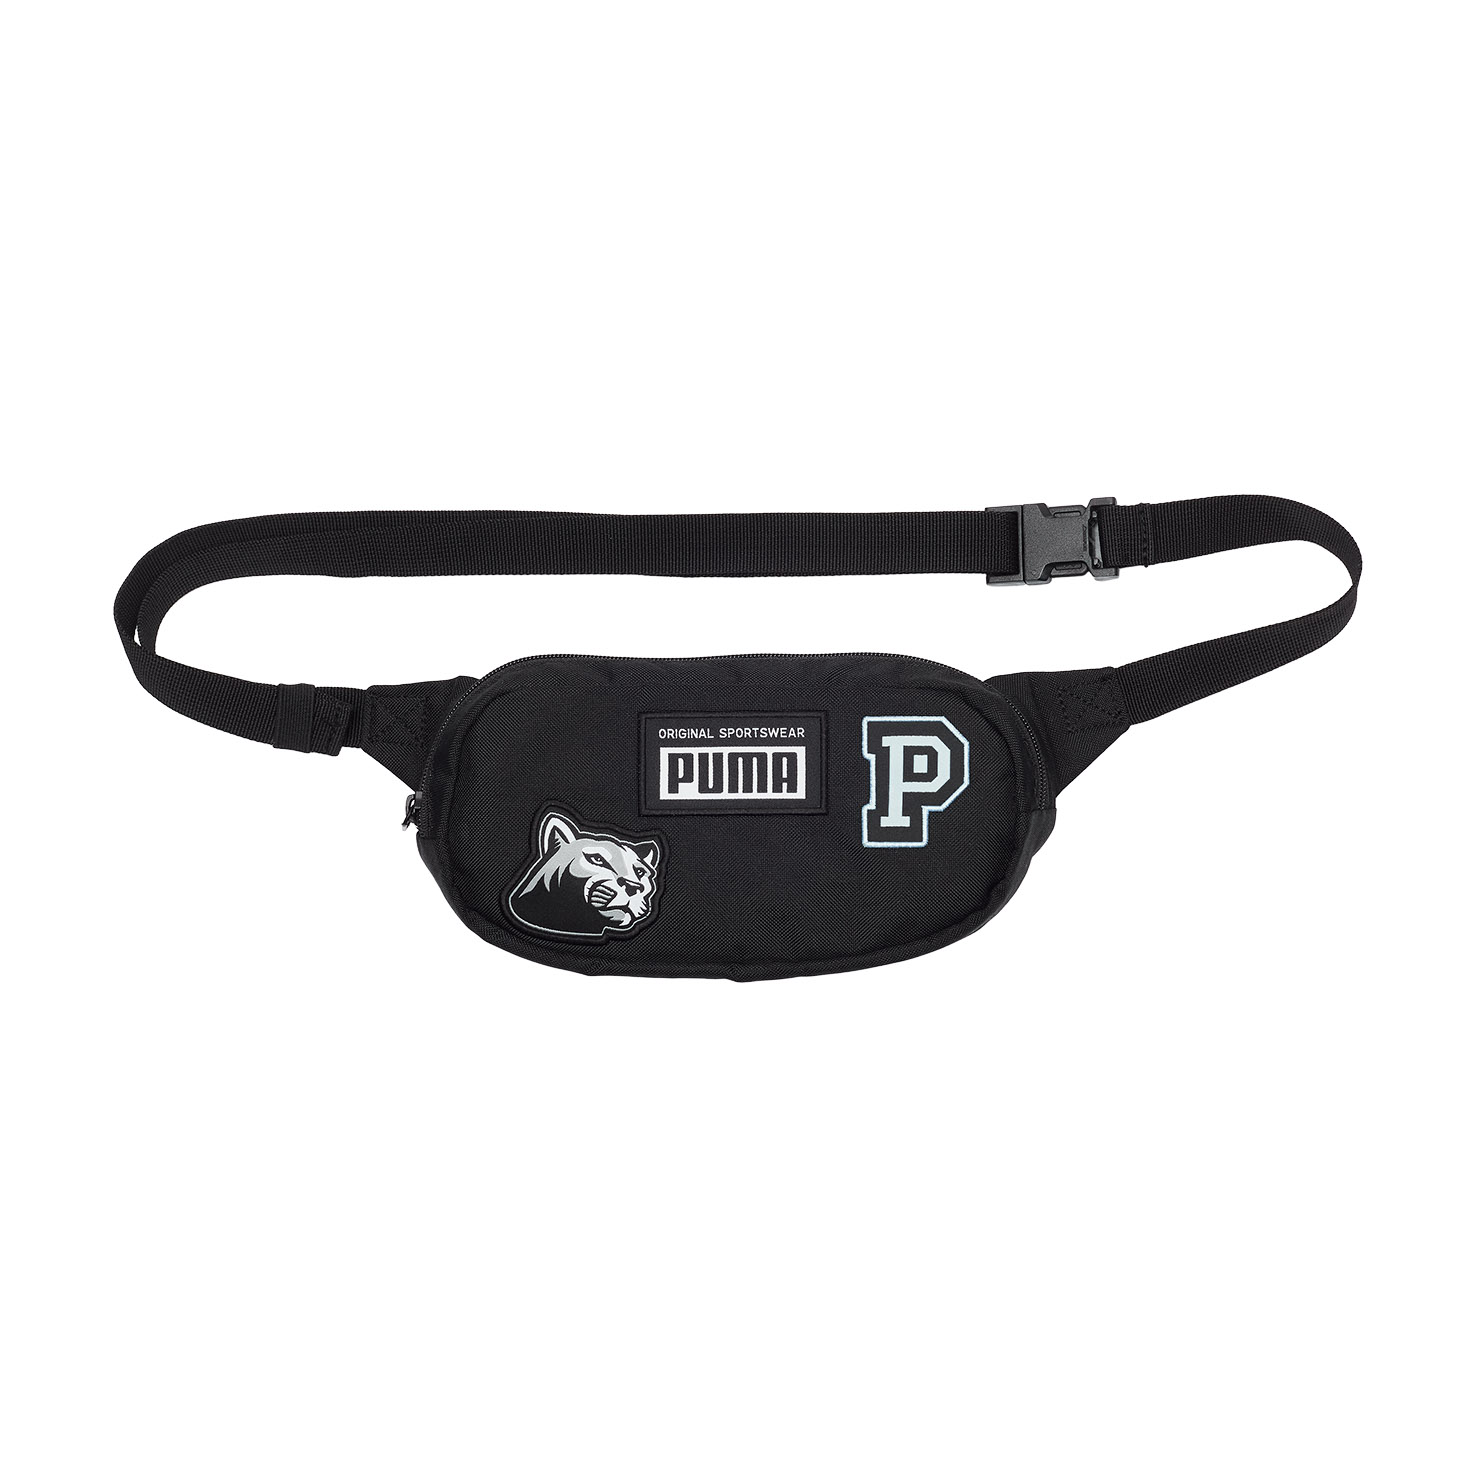 Patch Waist Bag PUMA, размер Один размер, цвет черный PM078562 - фото 1